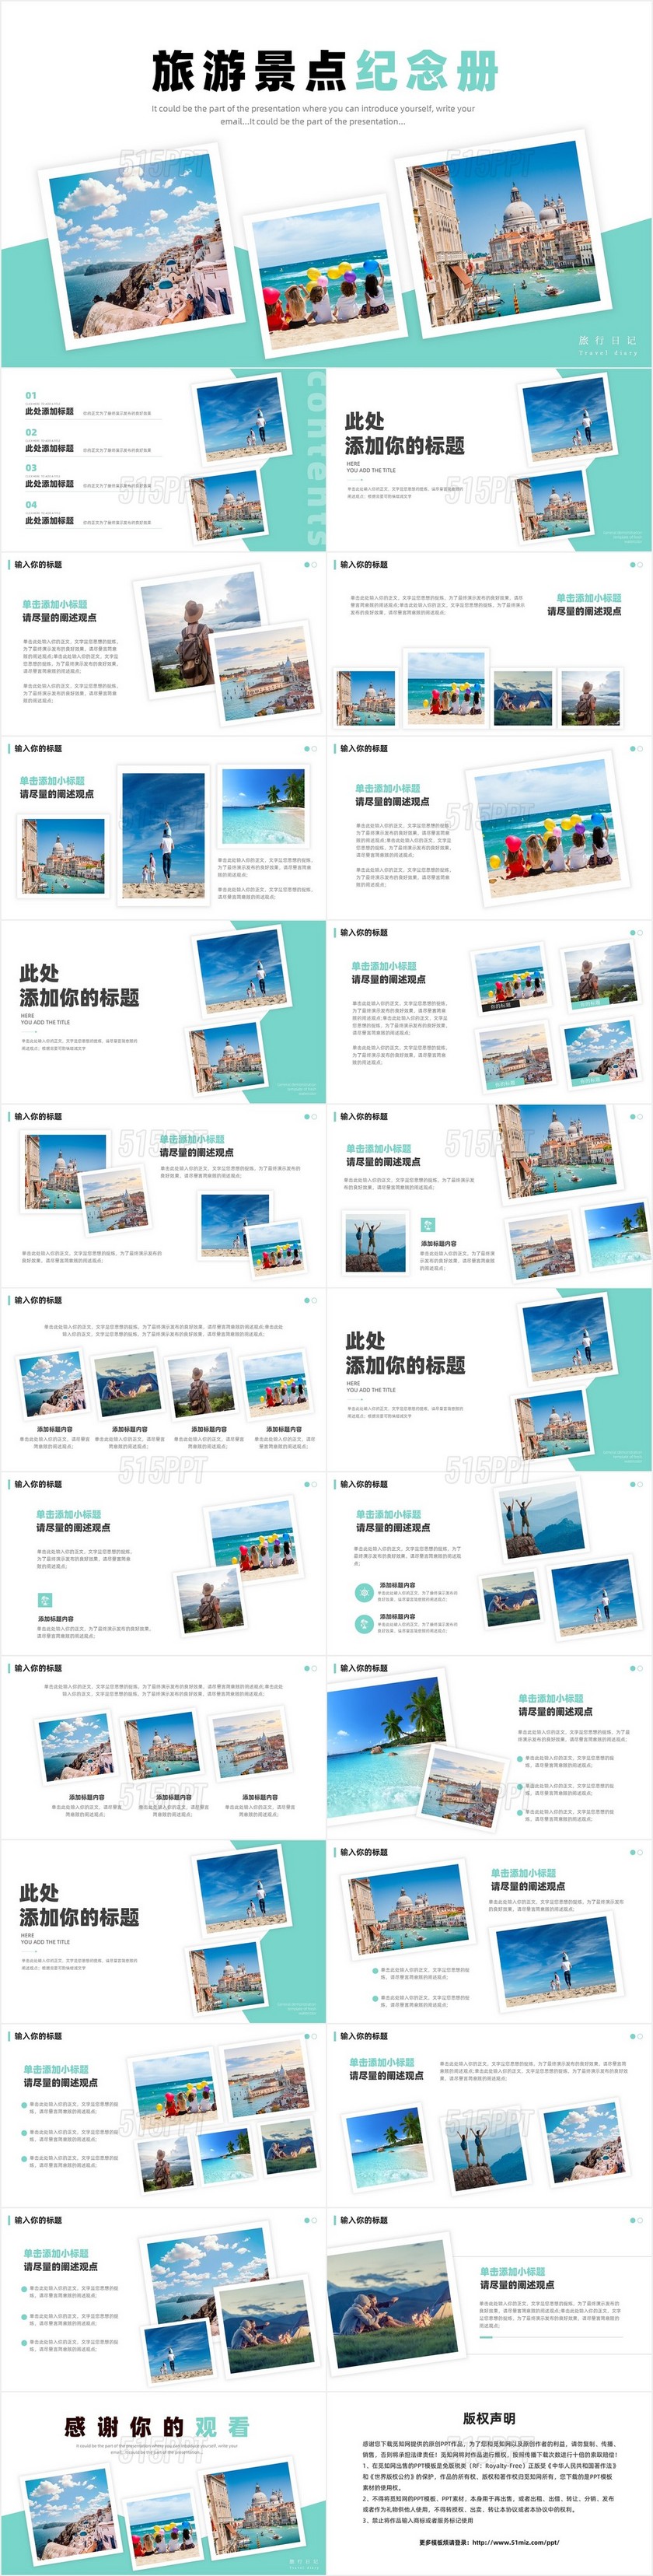 蓝色清新简约旅游电子纪念册相册PPT模板